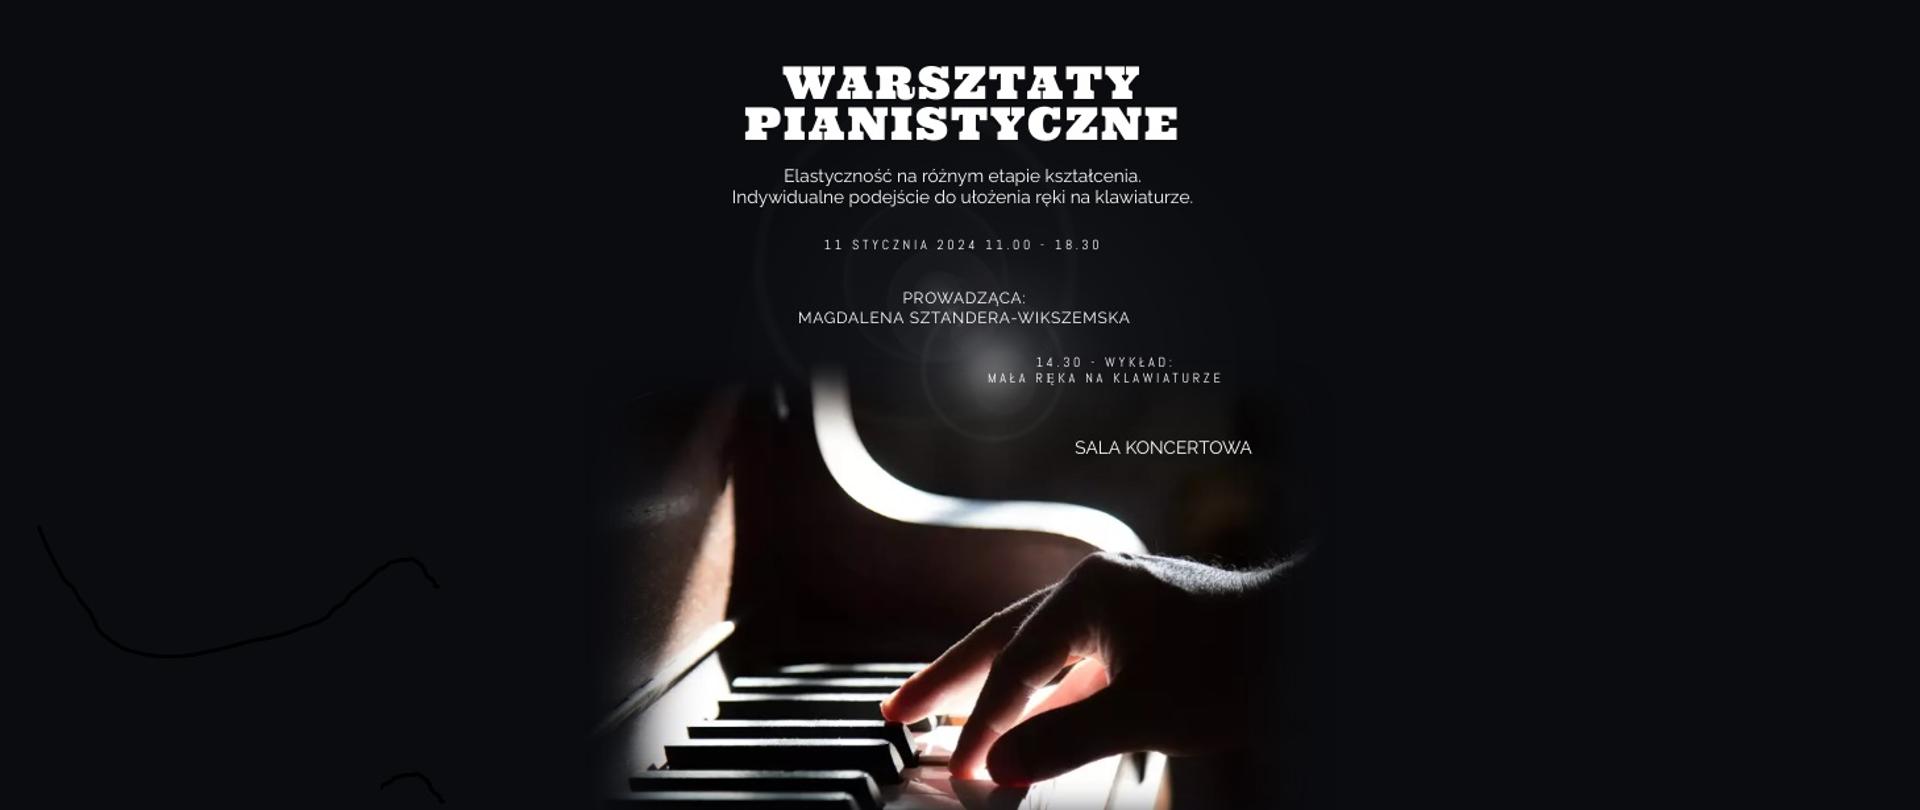 na czarnym tle białe litery tworzące napis Warsztaty pianistyczne, elastyczność na różnym etapie kształcenia, indywidualne podejście do ułożenia ręki na klawiaturze, 11 stycznia 2024, godz. 11.00 - 18.30, prowadząca Magdalena Sztandera -Wikszemska, 14.30 wykład - mała ręka na klawiaturze, sala koncertowa, na dole zdjęcie przedstawiające dłoń na klawiaturze fortepianu